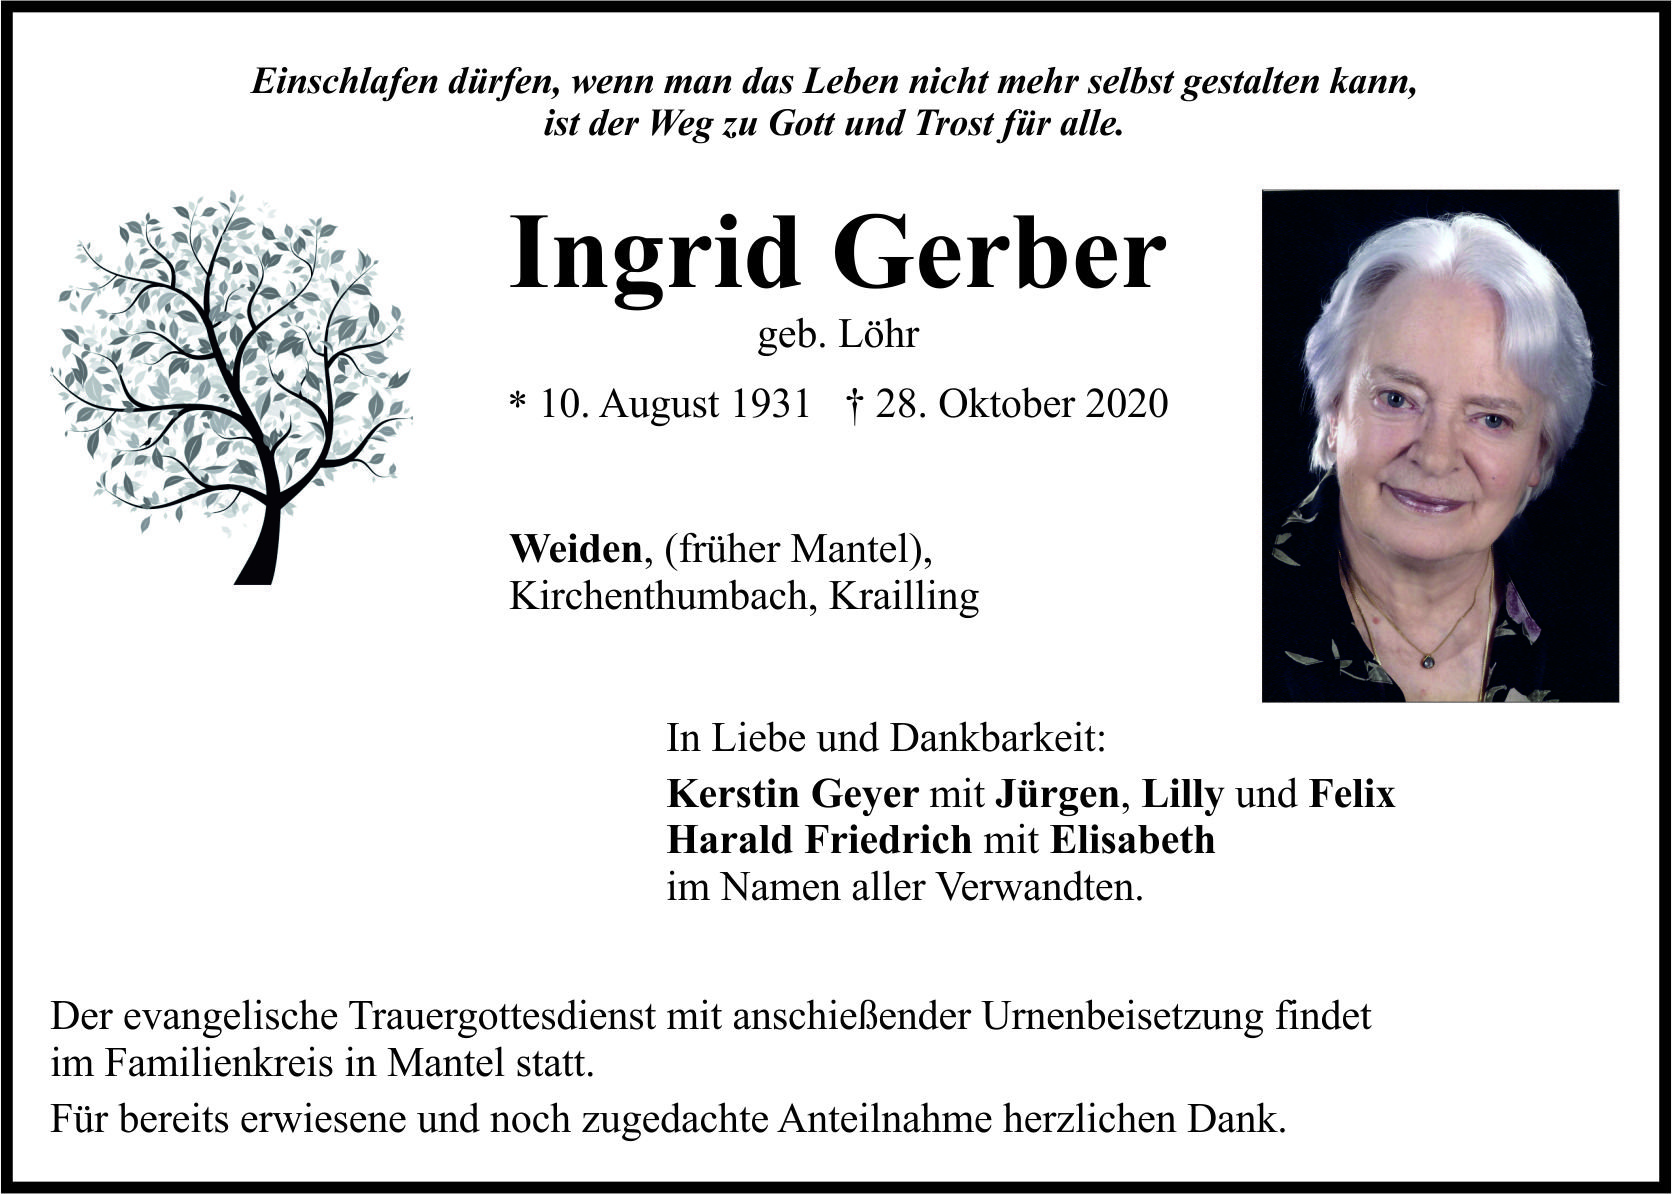 Traueranzeige Ingrid Gerber, Weiden